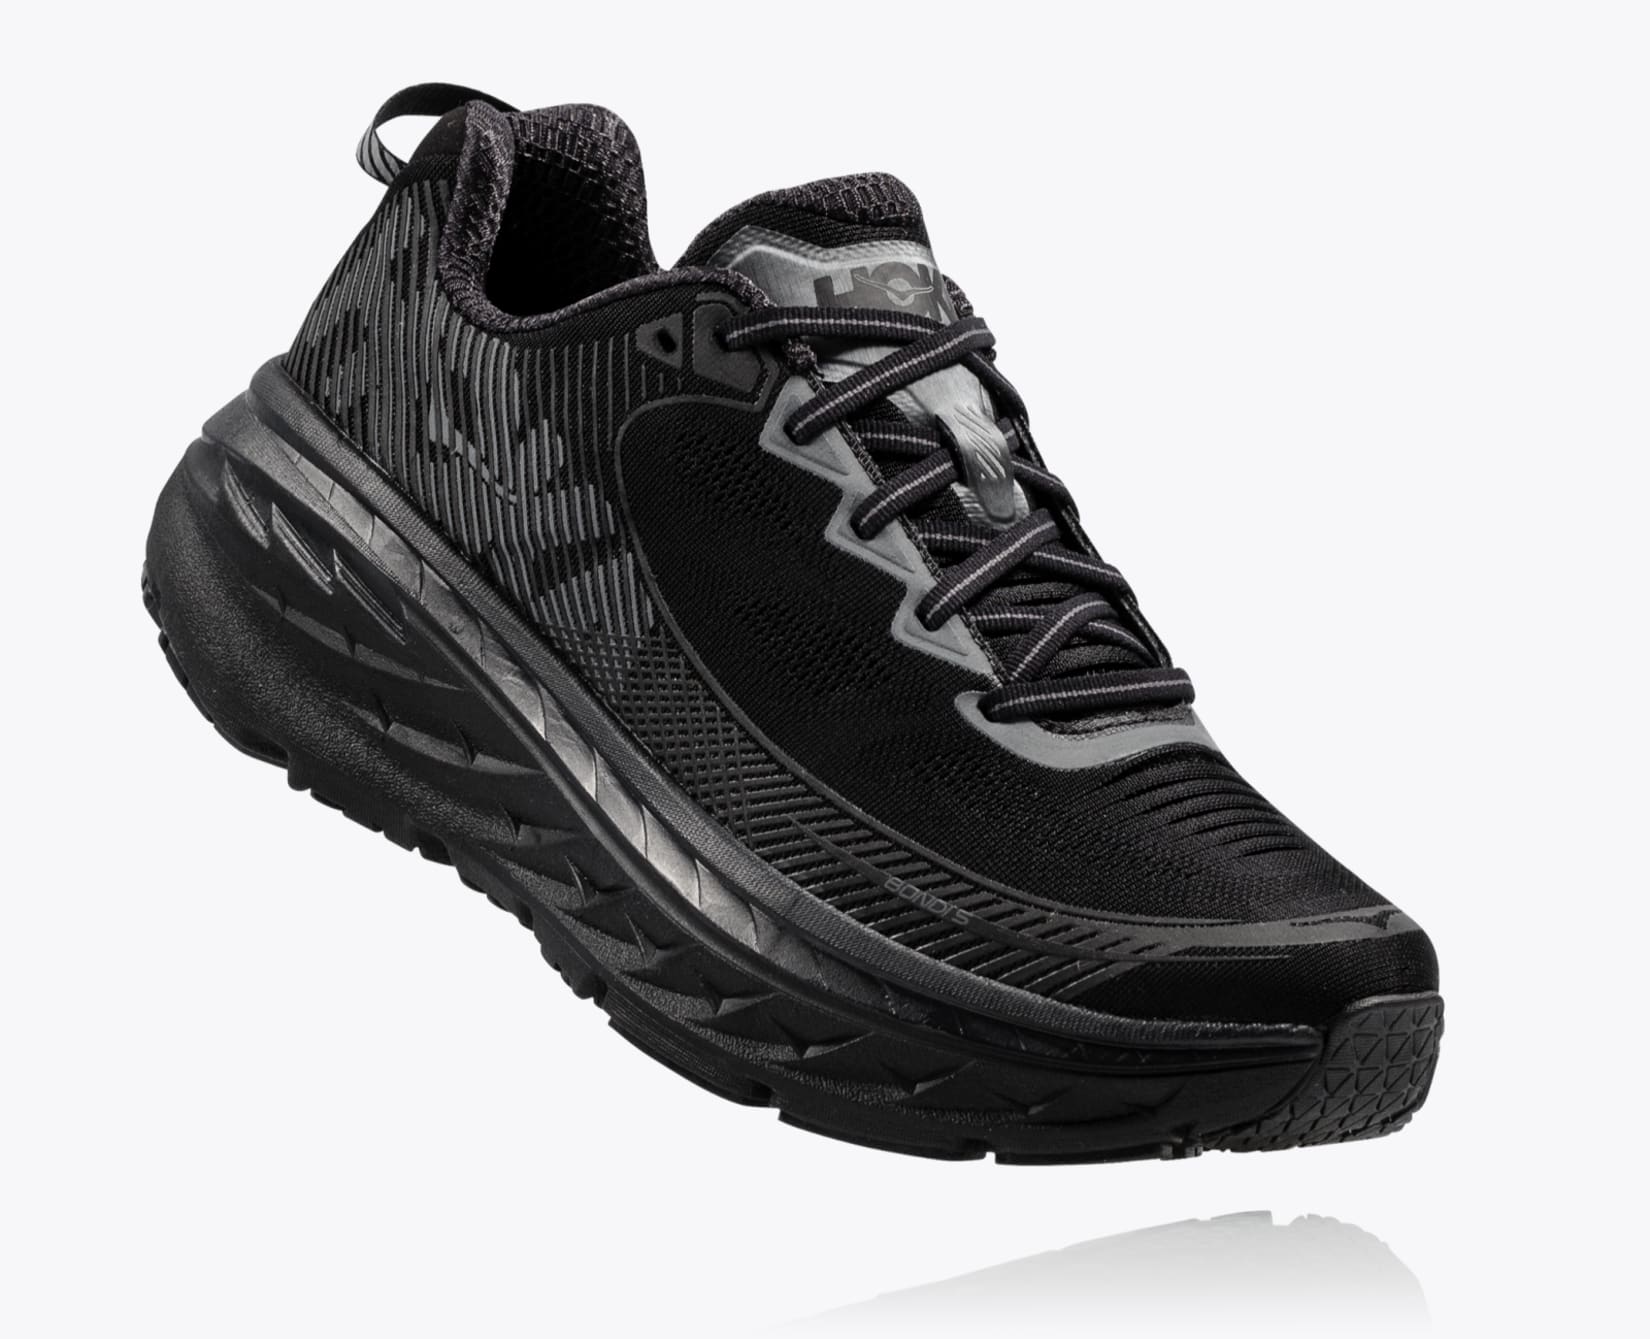 Men's Bondi 5 Road Running Shoe | HOKA ONE ONE®